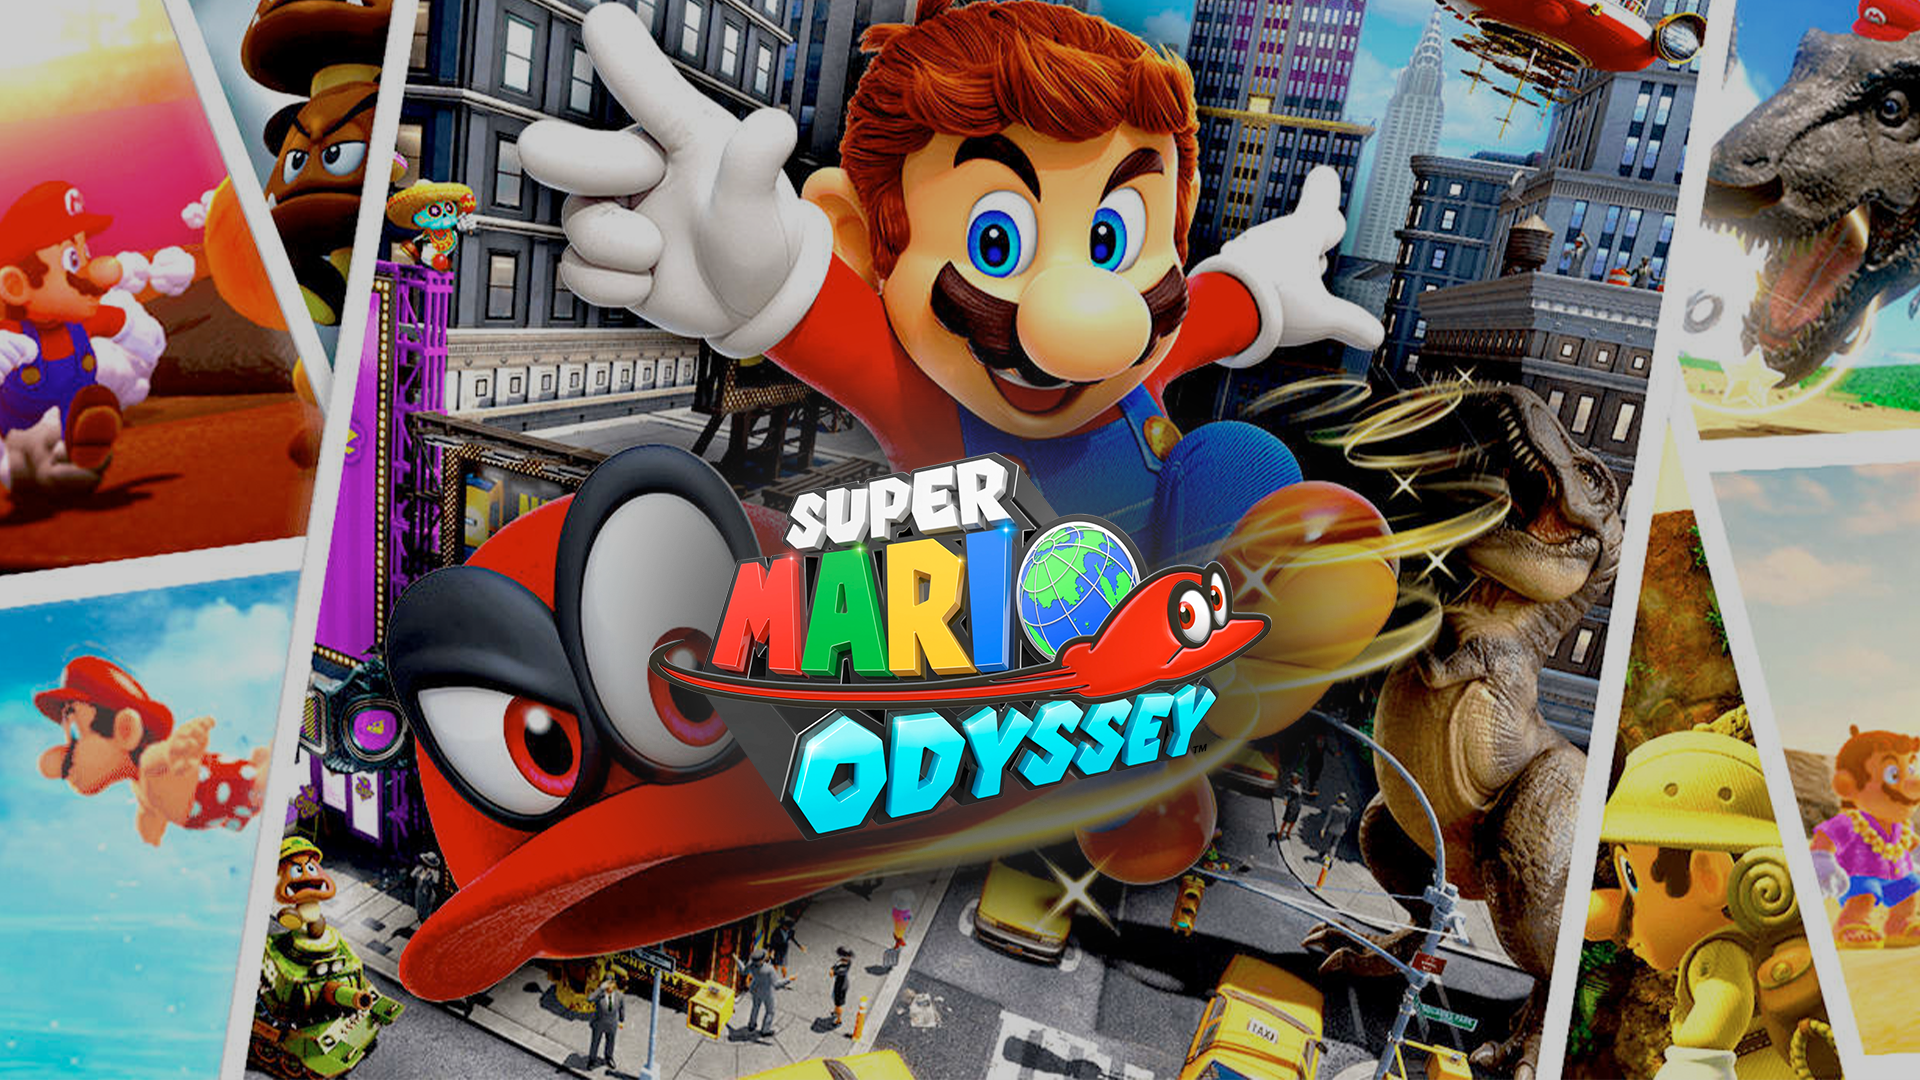 Super Mario Odyssey em Oferta